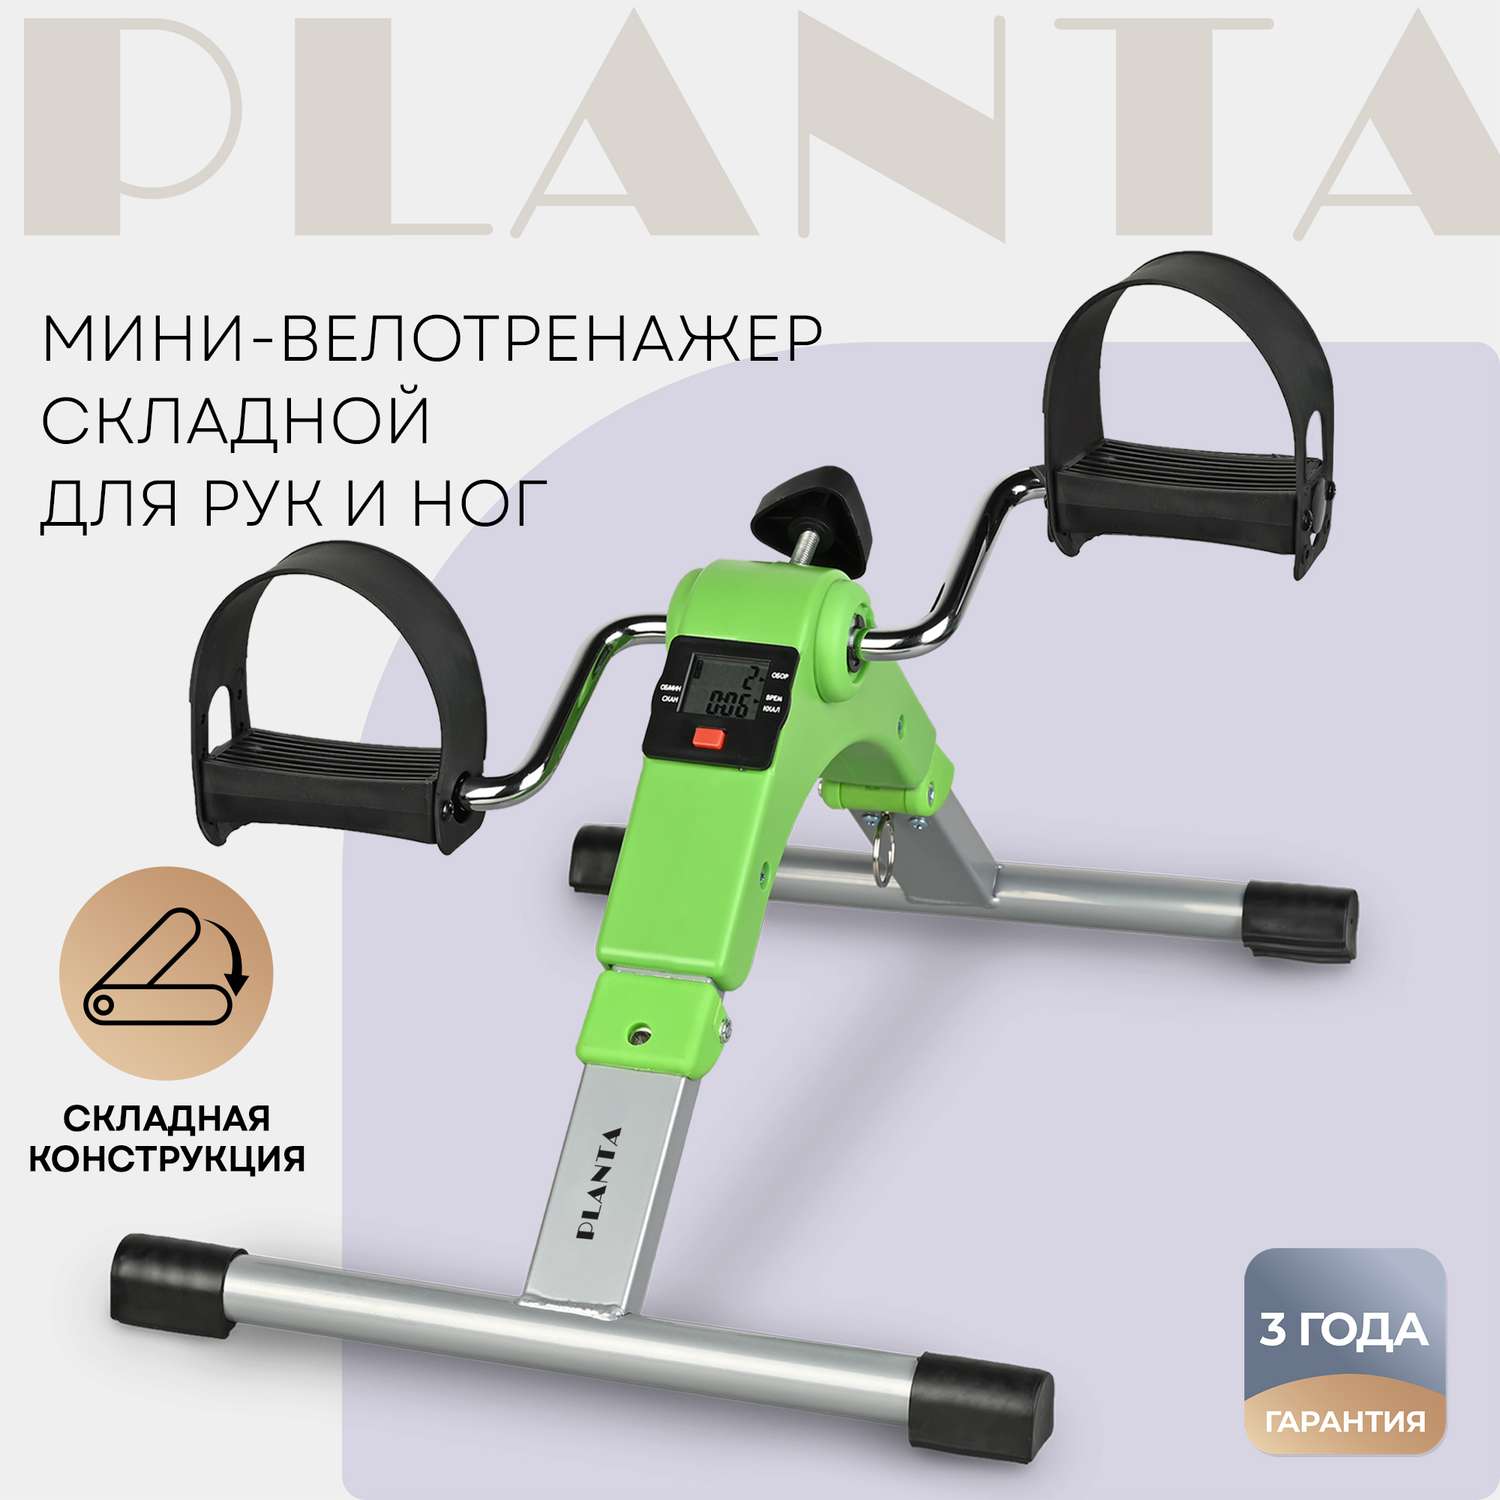 Велотренажер Planta FD-BIKE-001 складной - фото 1